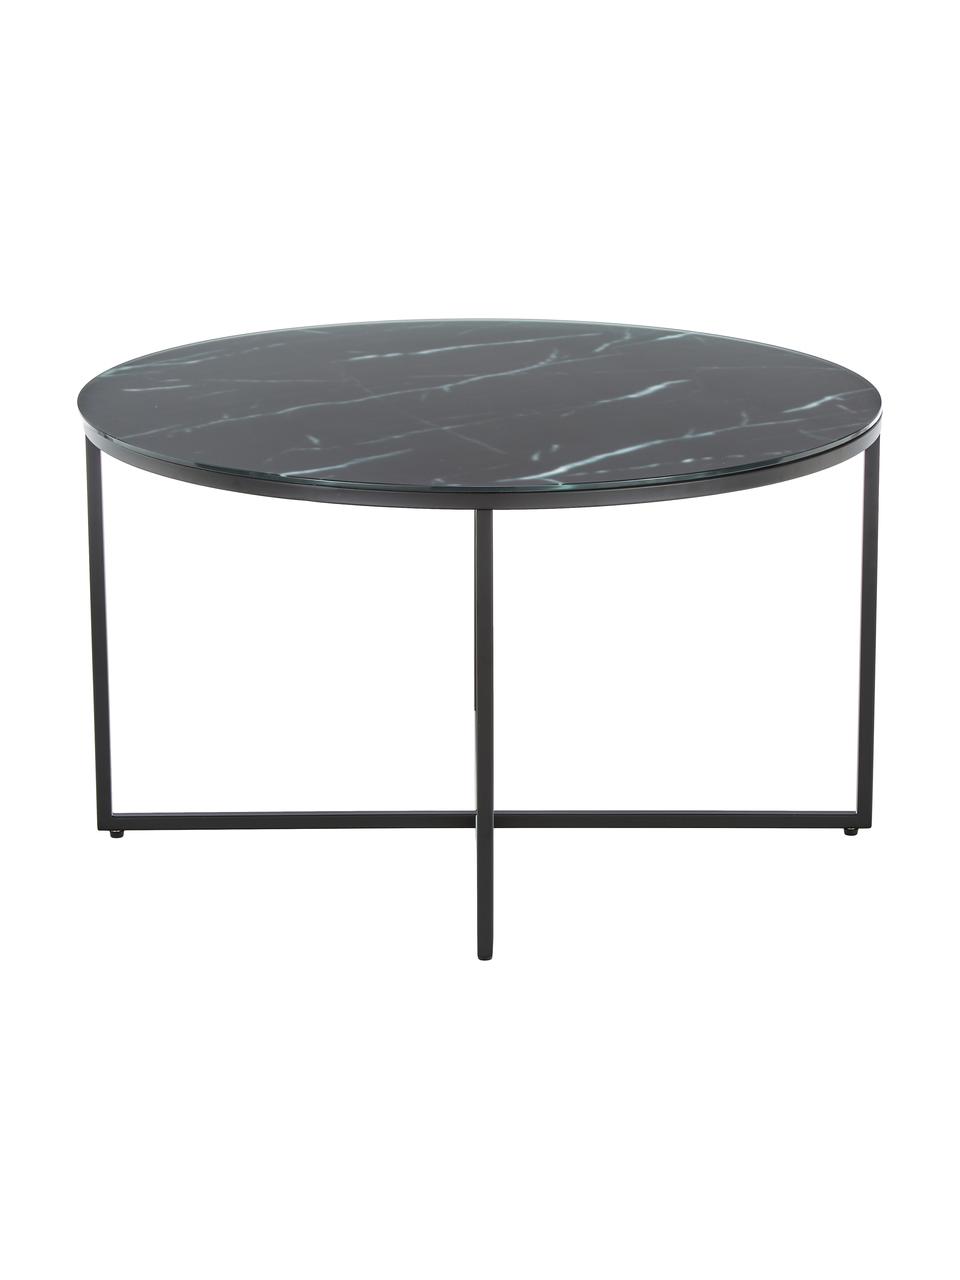 Kulatý konferenční stolek se skleněnou deskou v mramorovém vzhledu Antigua, Mramorový vzhled, černá, Ø 80 cm